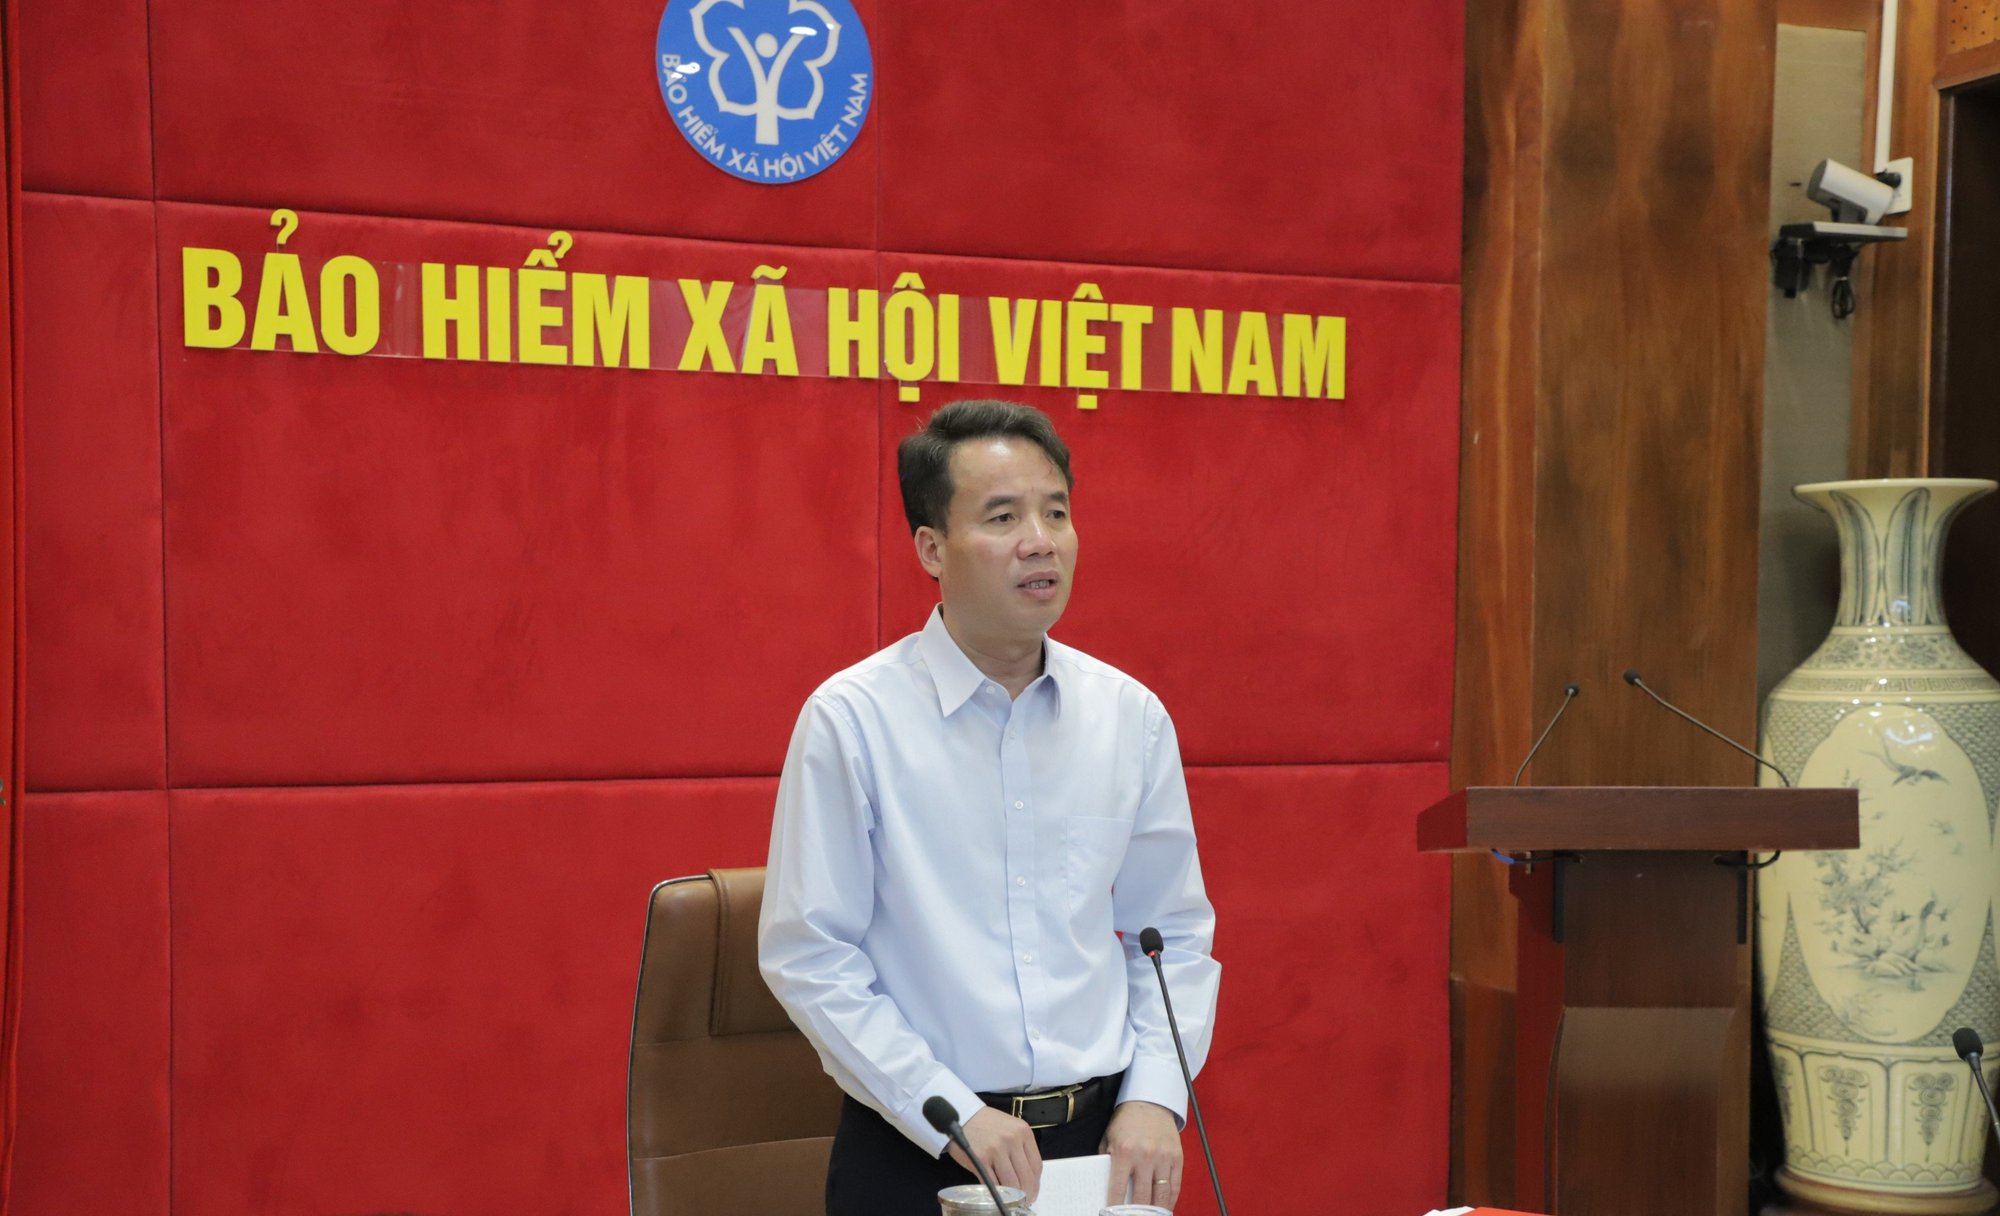 Ngày BHYT Việt Nam 1/7: Quyền lợi của người tham gia ngày càng mở rộng, bệnh hiểm nghèo được chi trả - Ảnh 1.